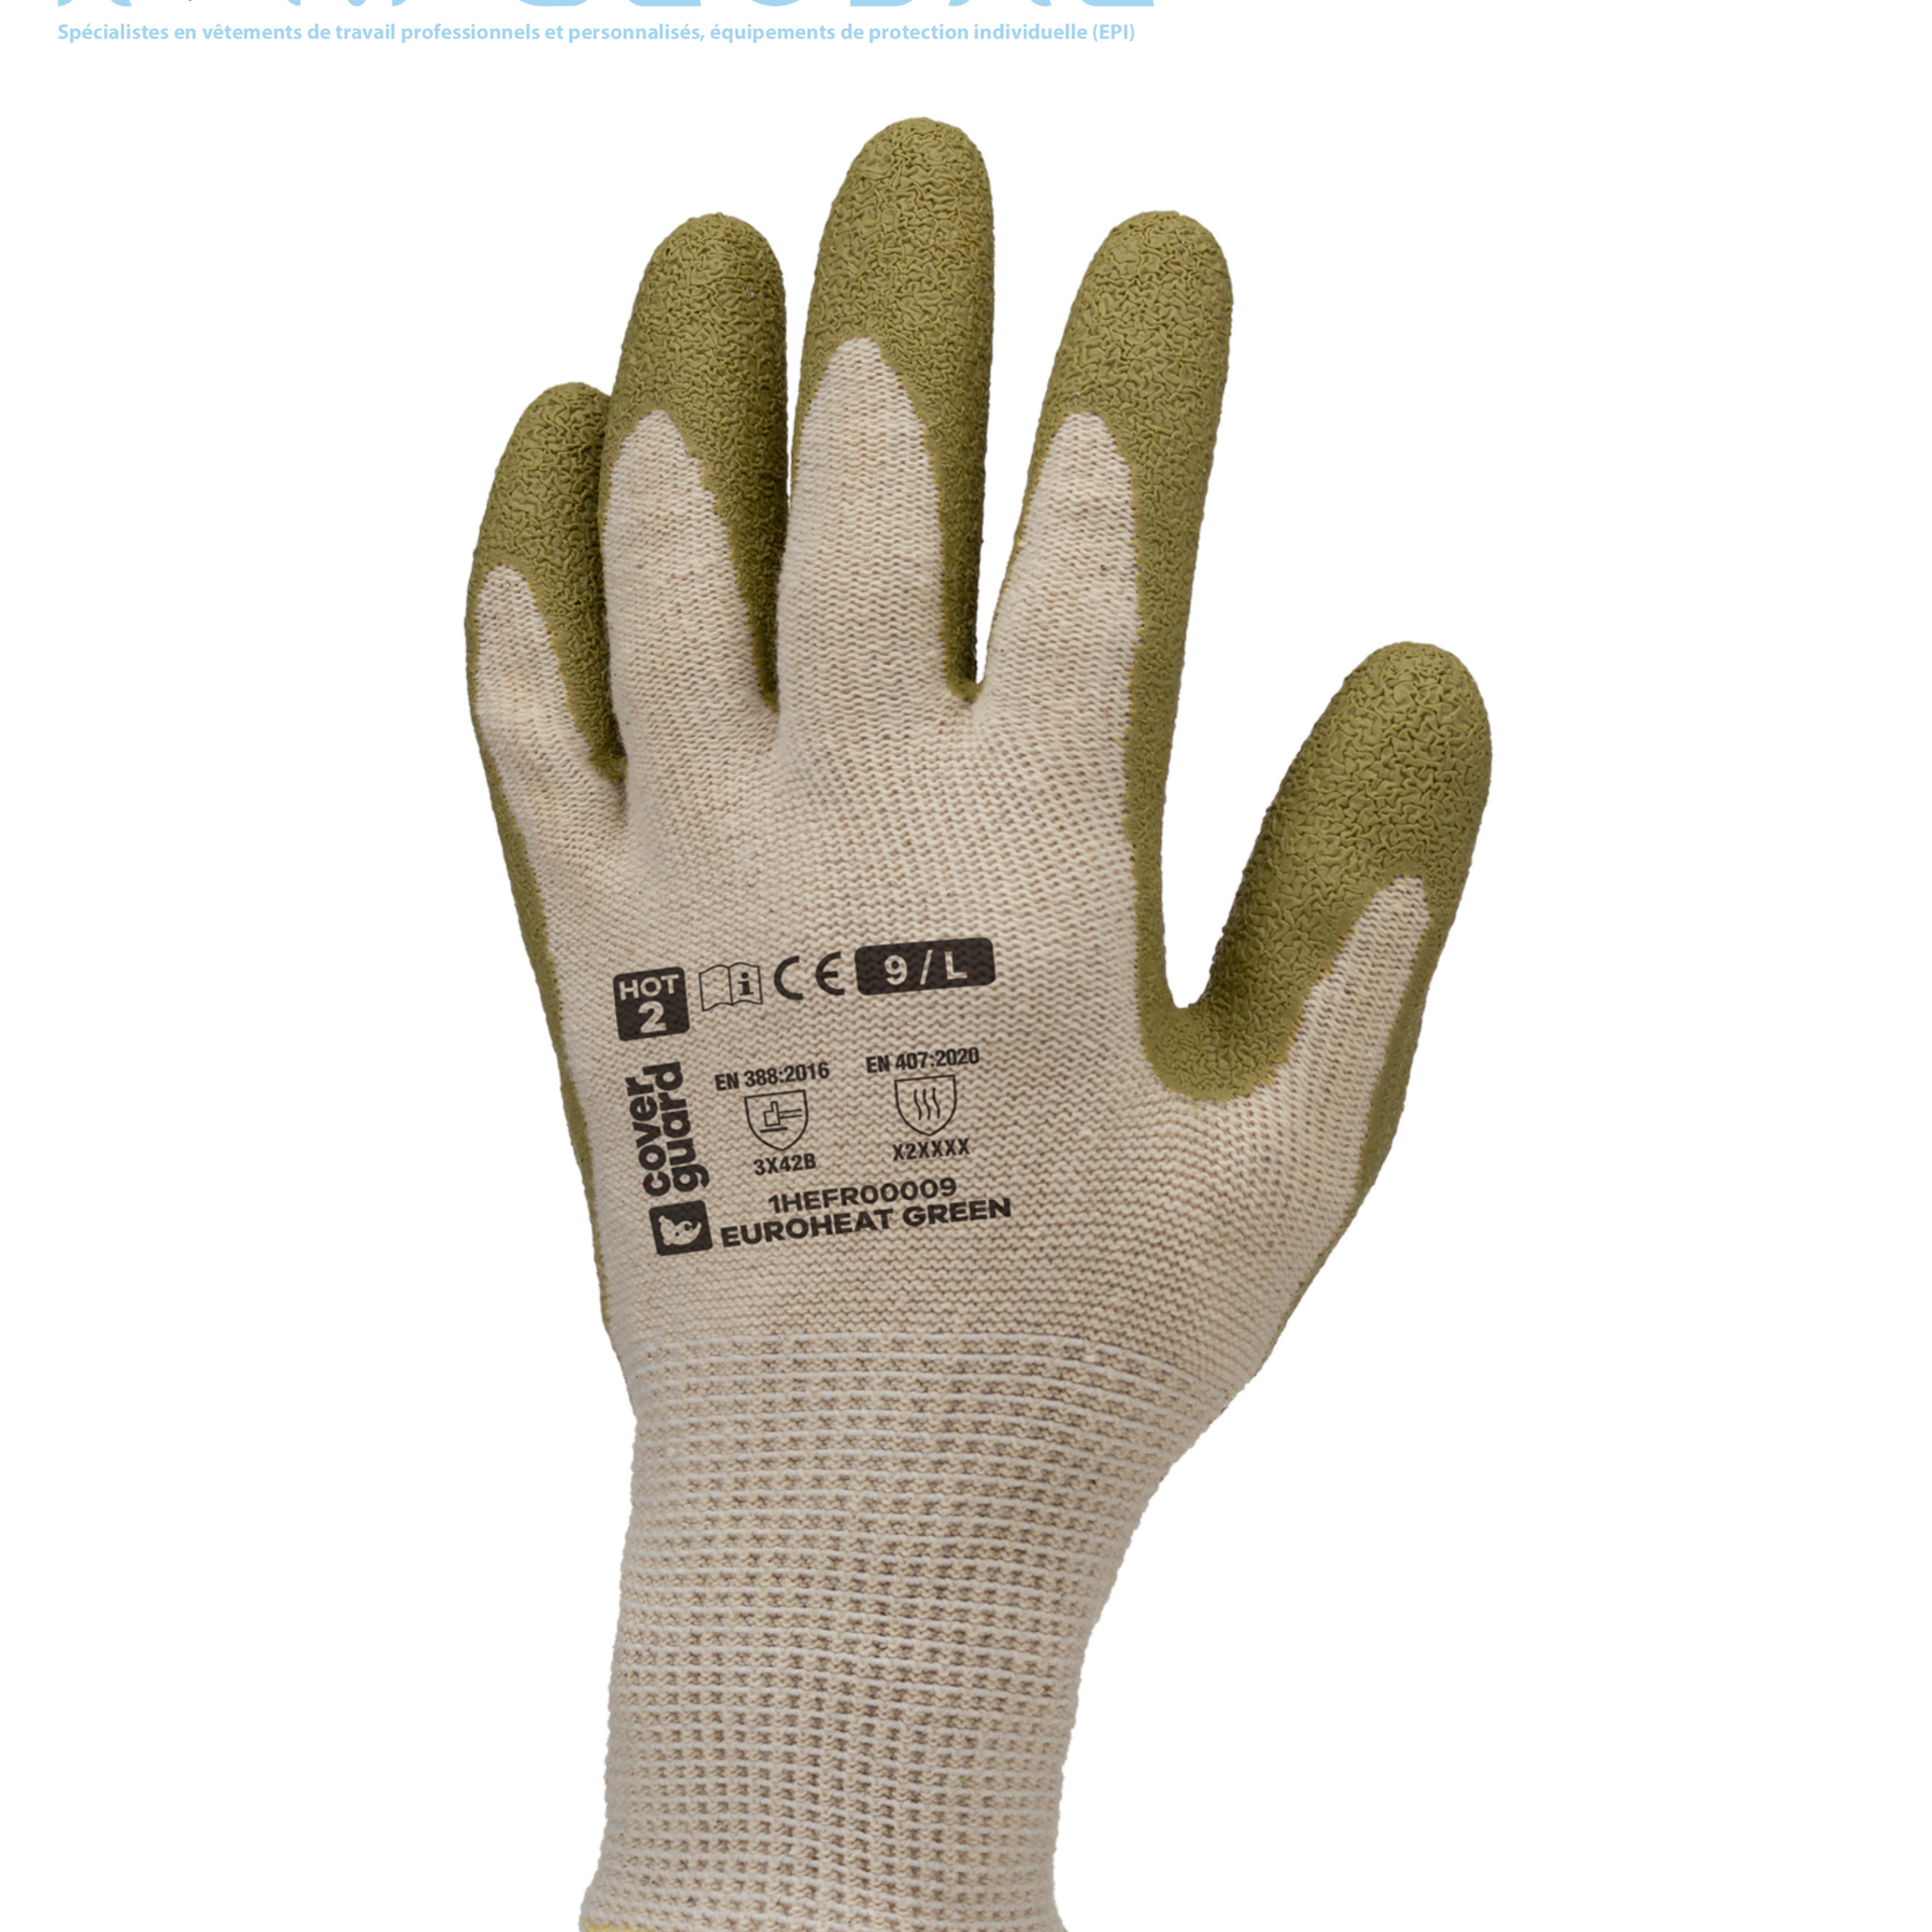 Gant de protection thermique en tricot blanc cassé en coton vierge/coton recyclé/polyester recyclé enduit au latex anti-chaleur et anti-coupure CUT B HOT 2 - EUROHEAT GREEN COVERGUARD (boîte de 10 paires)